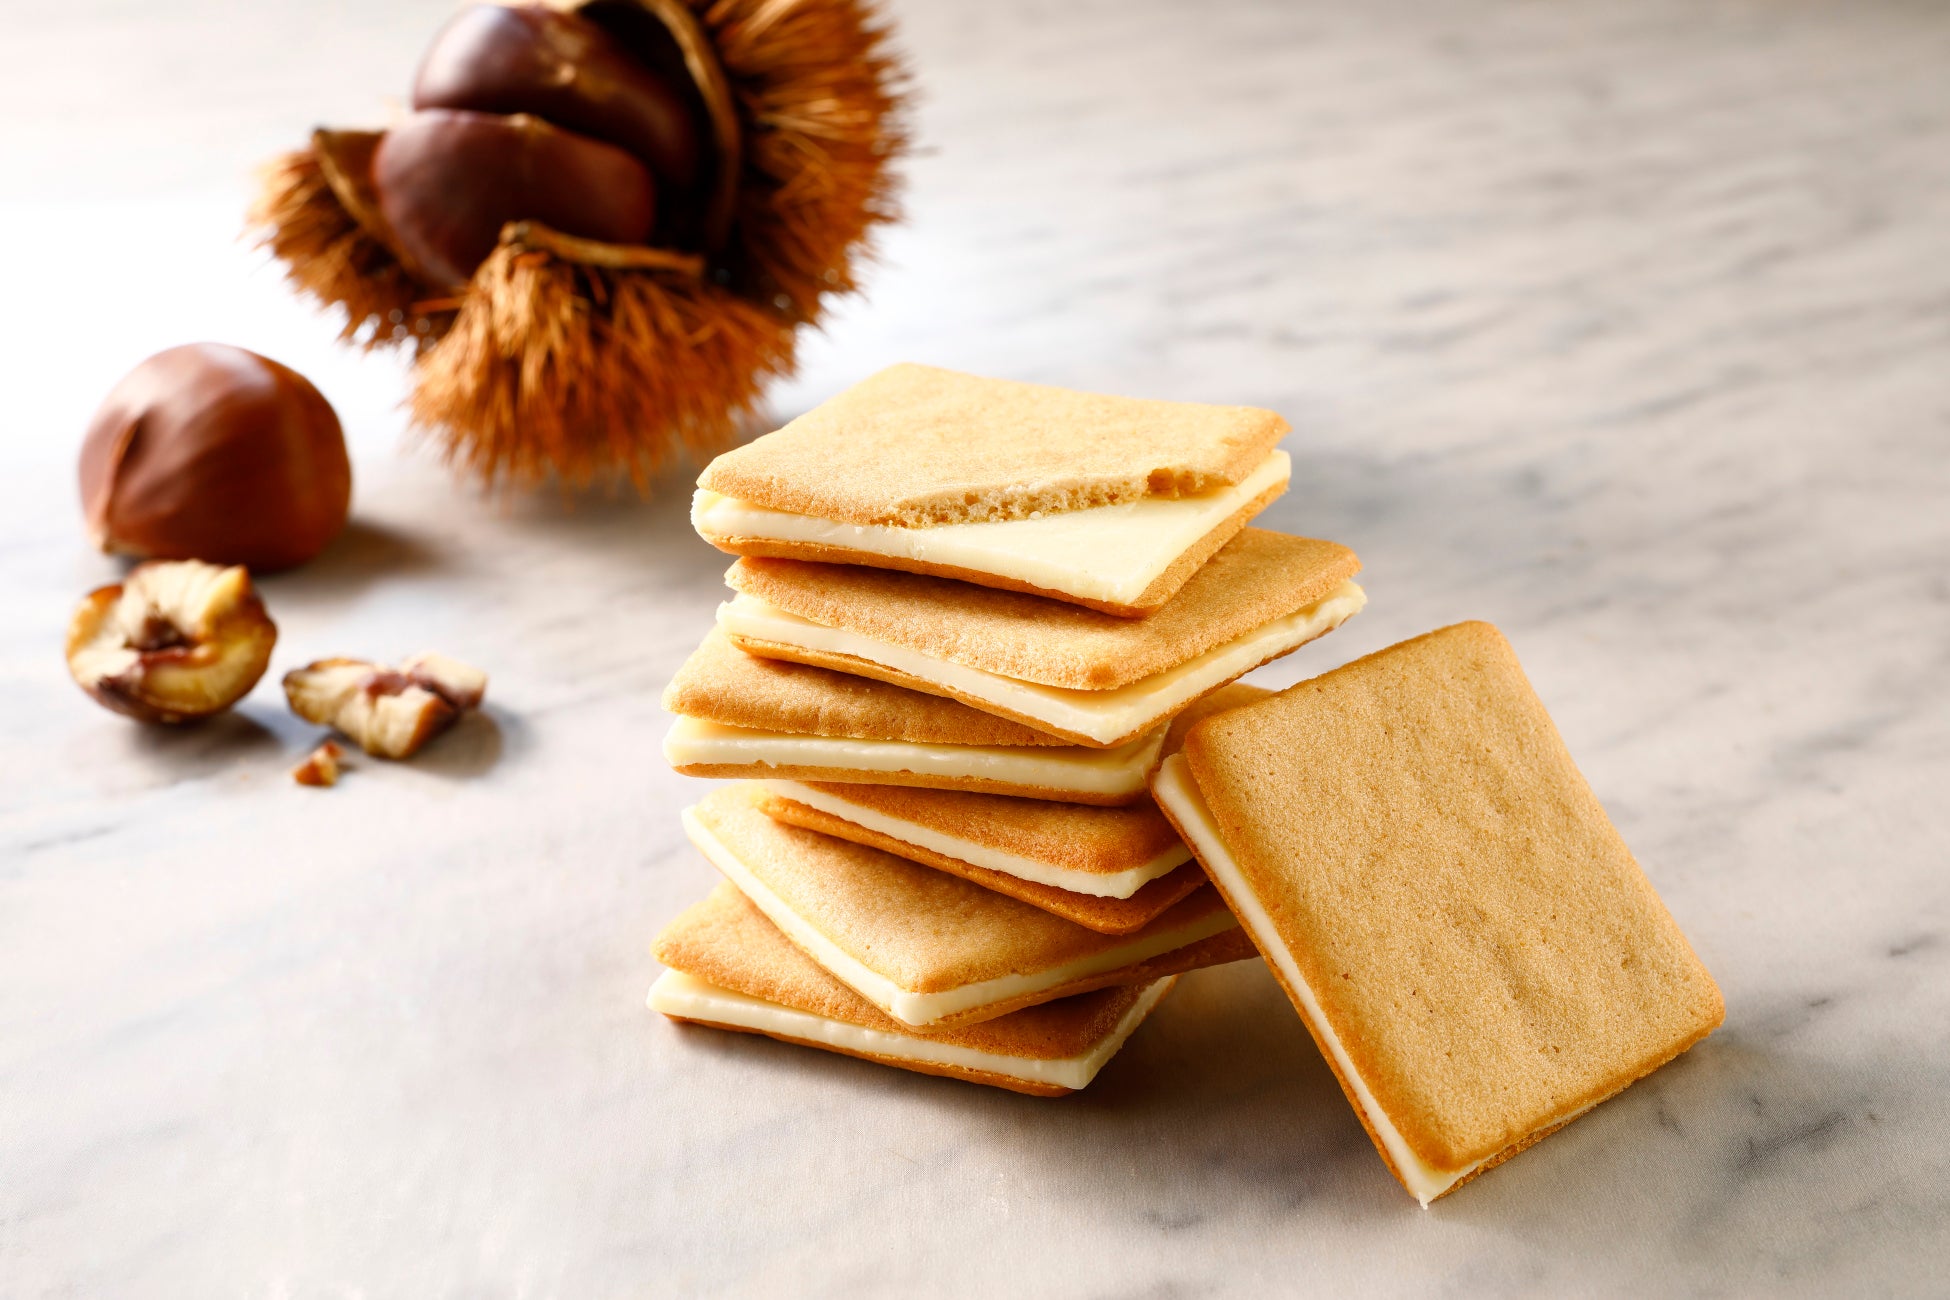 香ばしいクッキーが食欲をそそる。イタリア産の栗を使用した秋らしい逸品。「東京ミルクチーズ工場」から「マロン&マスカルポーネクッキー」を新発売！